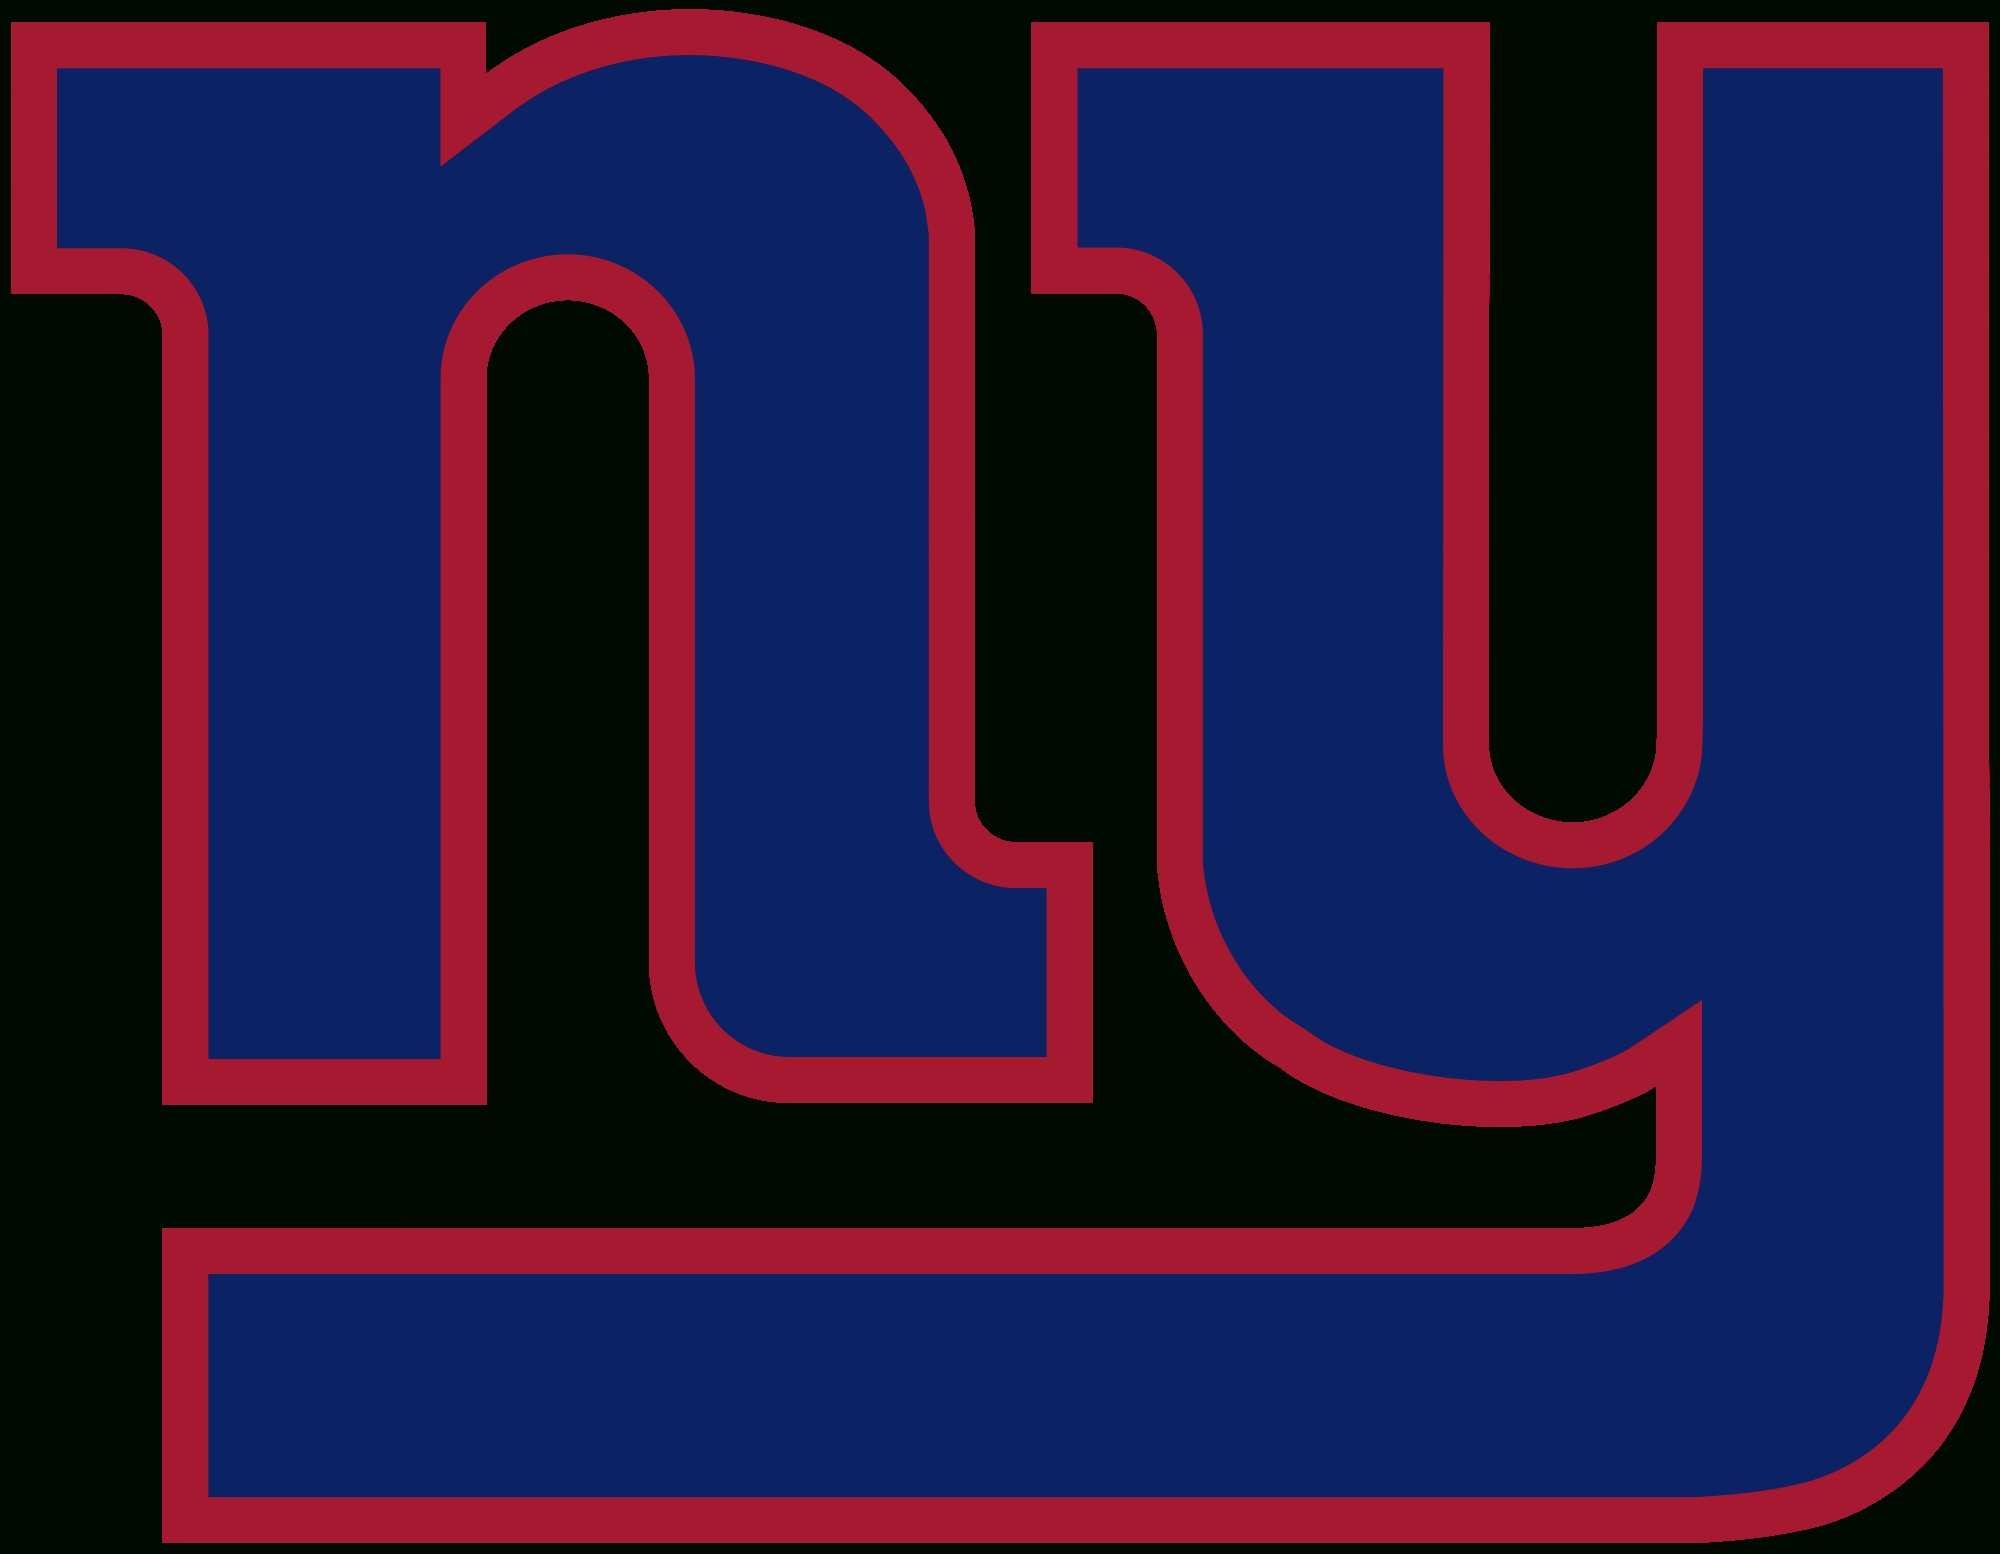 10 Best New York Giants Logo Pics FULL HD 1920×1080 For PC Background